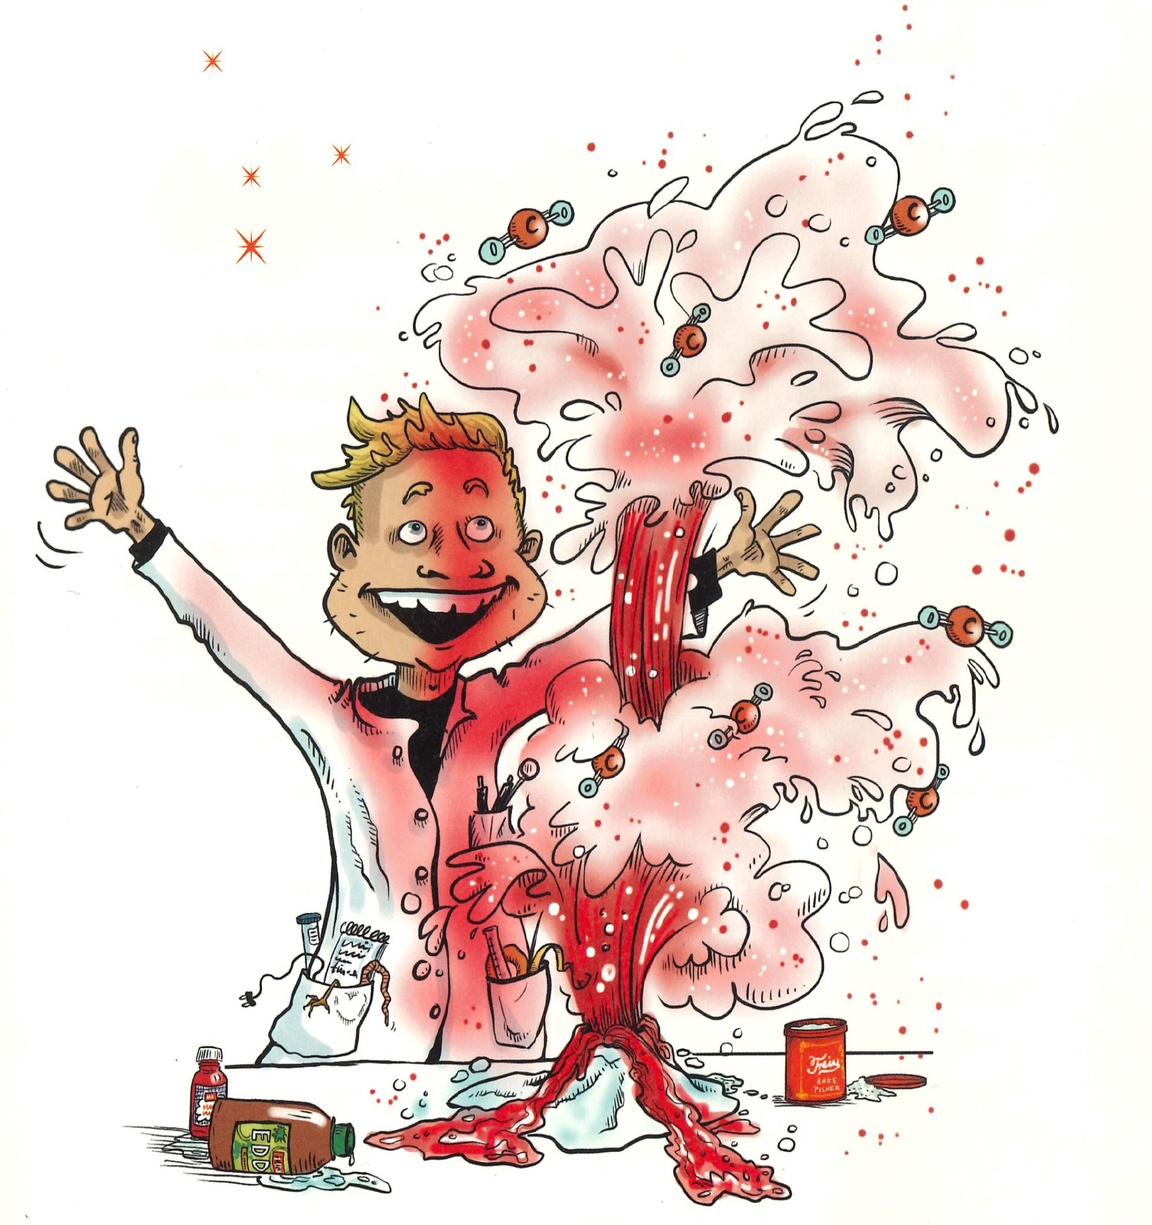 Tegning av en blid mann med hvit frakk, som veiver med armene. Han står bak en liten rød kjemisk eksplusjon som ligner em liten vulkan.